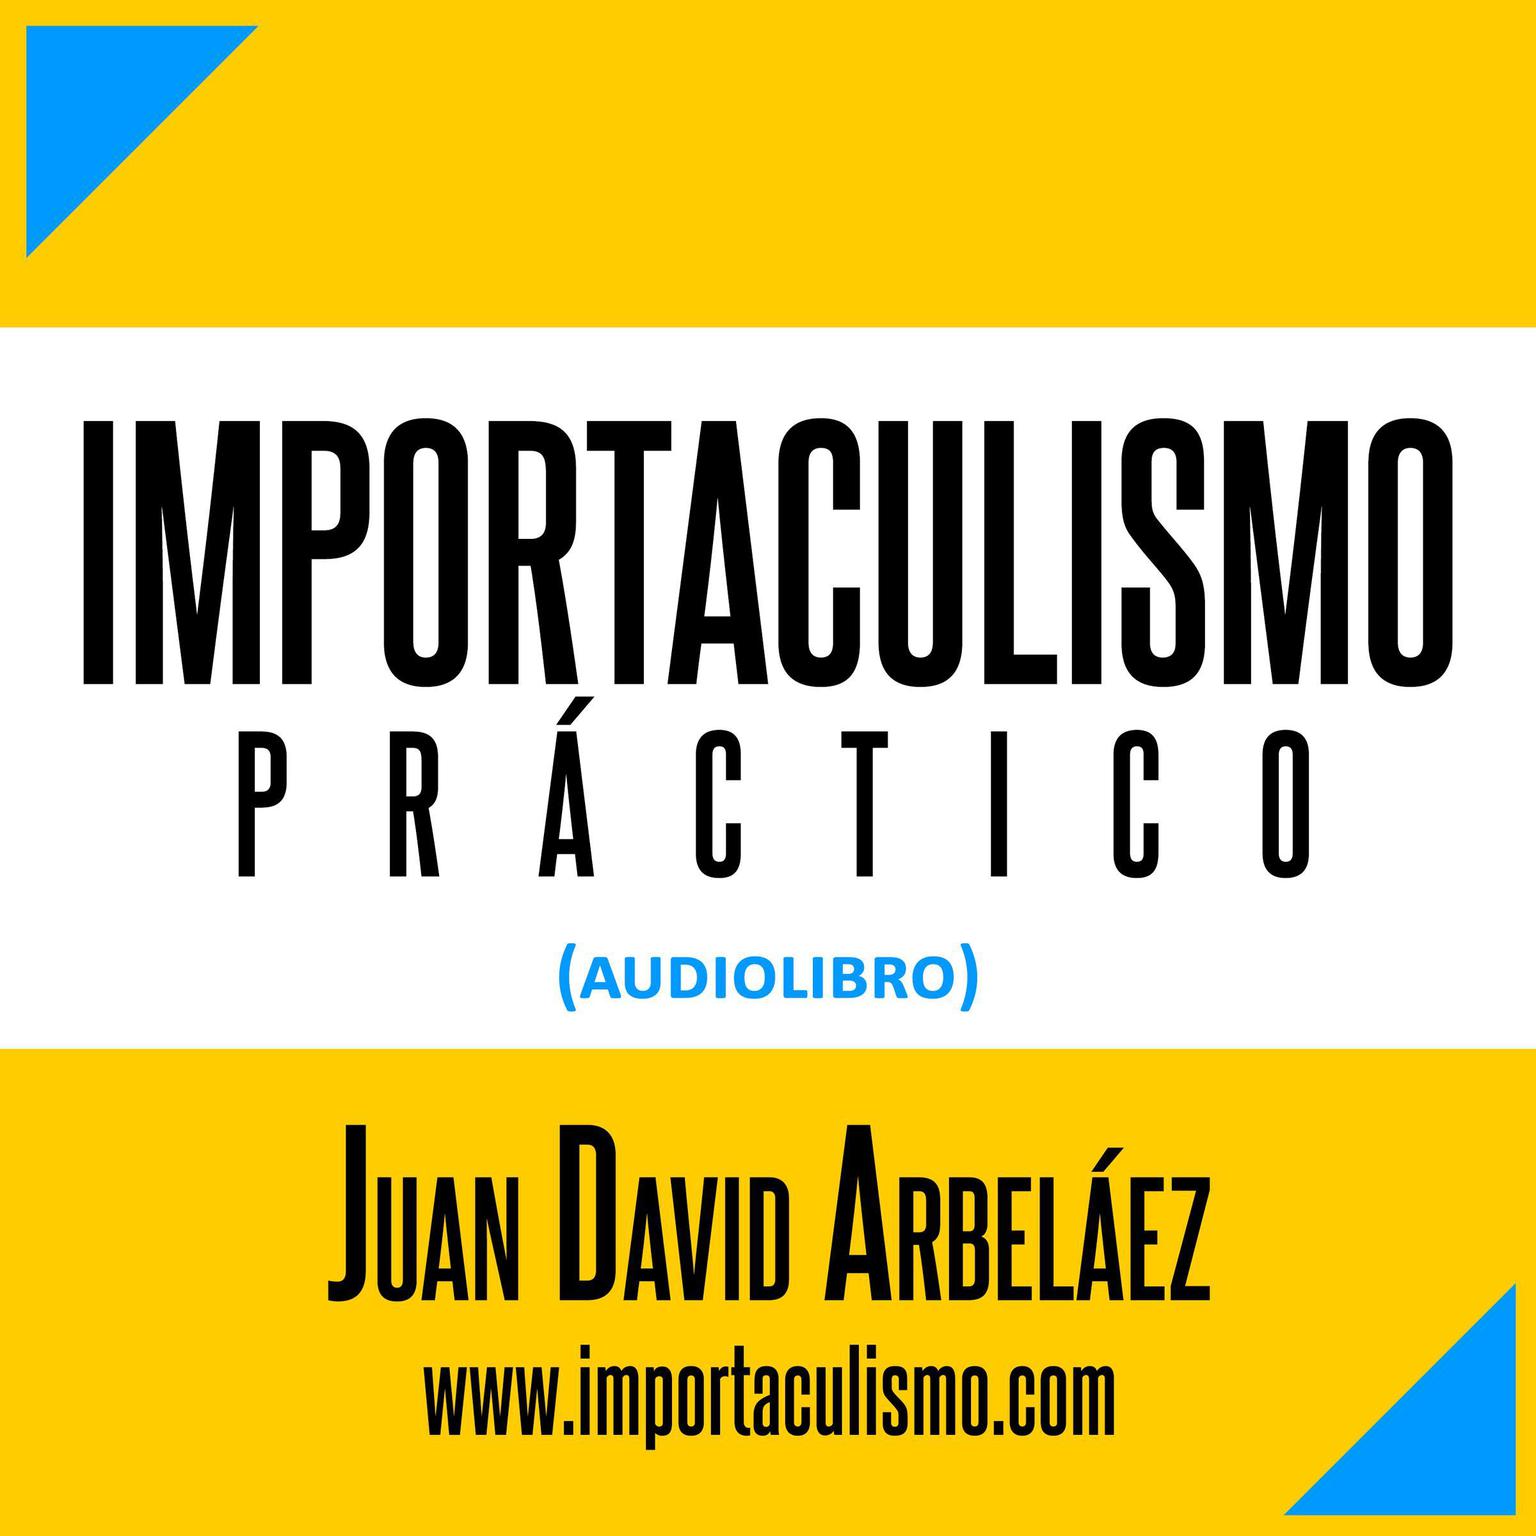 Importaculismo Práctico (Audiolibro - Estoicismo Moderno) (Abridged) Audiobook, by Juan David Arbelaez